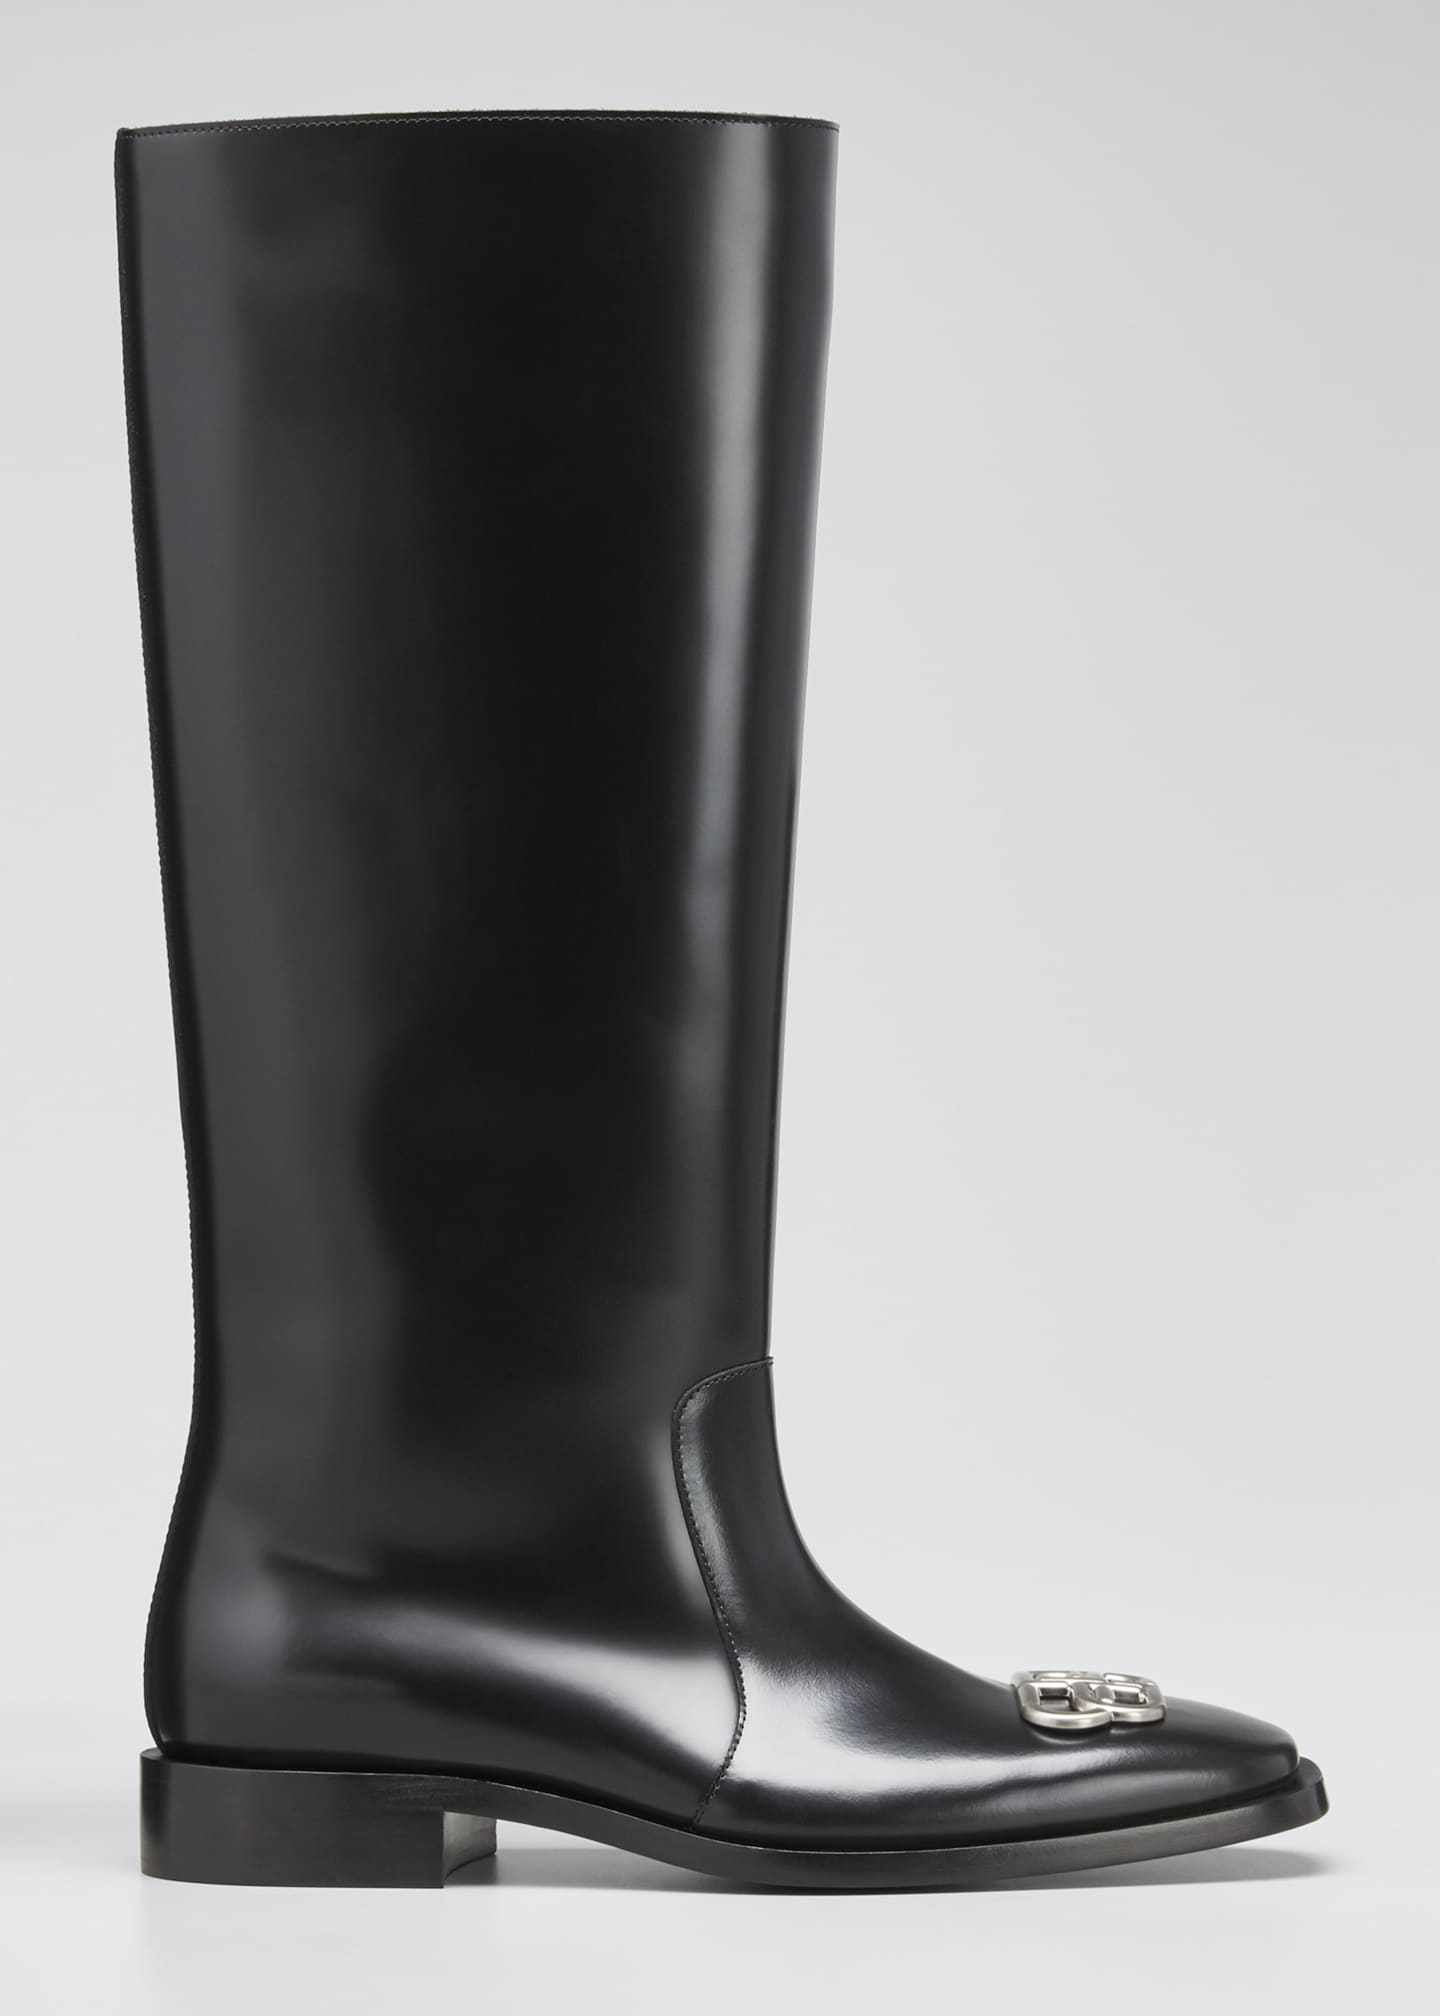 balenciaga rain boots